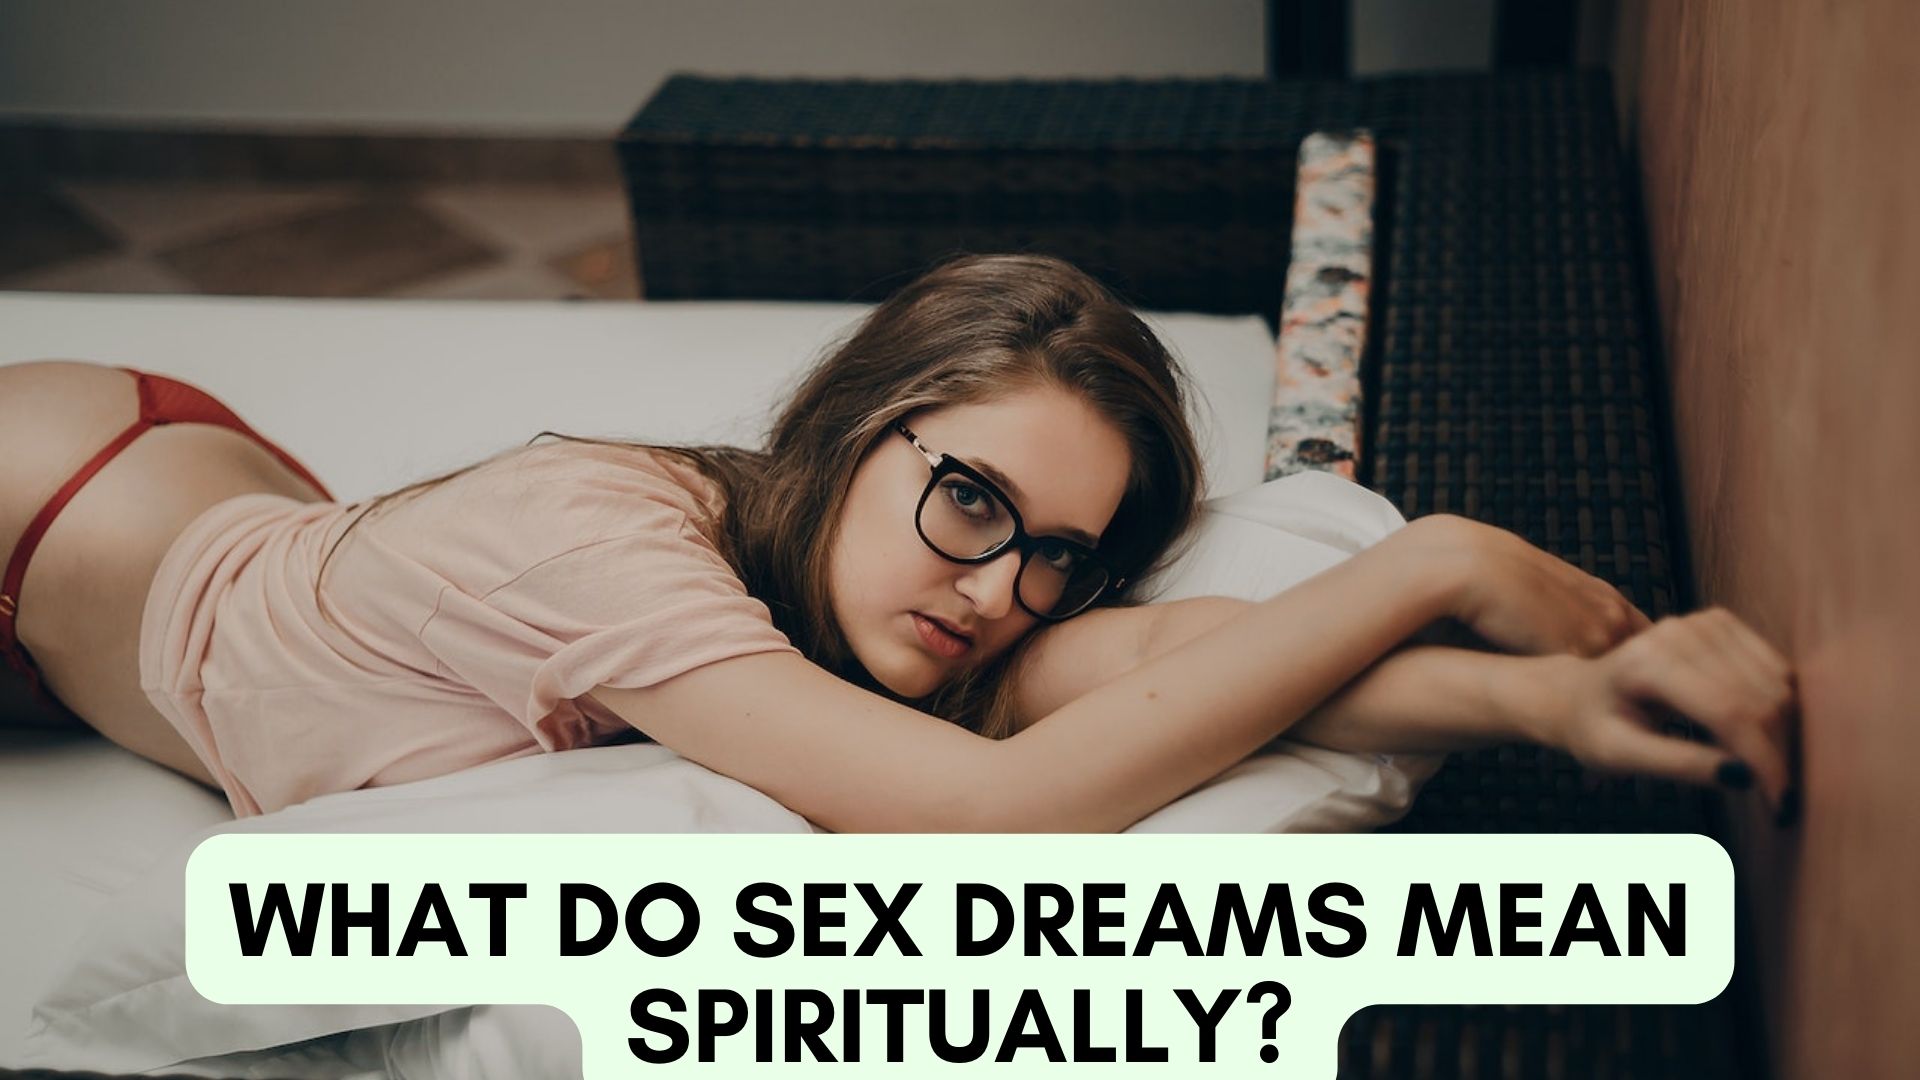 What Do Sex Dreams Mean Spiritually?